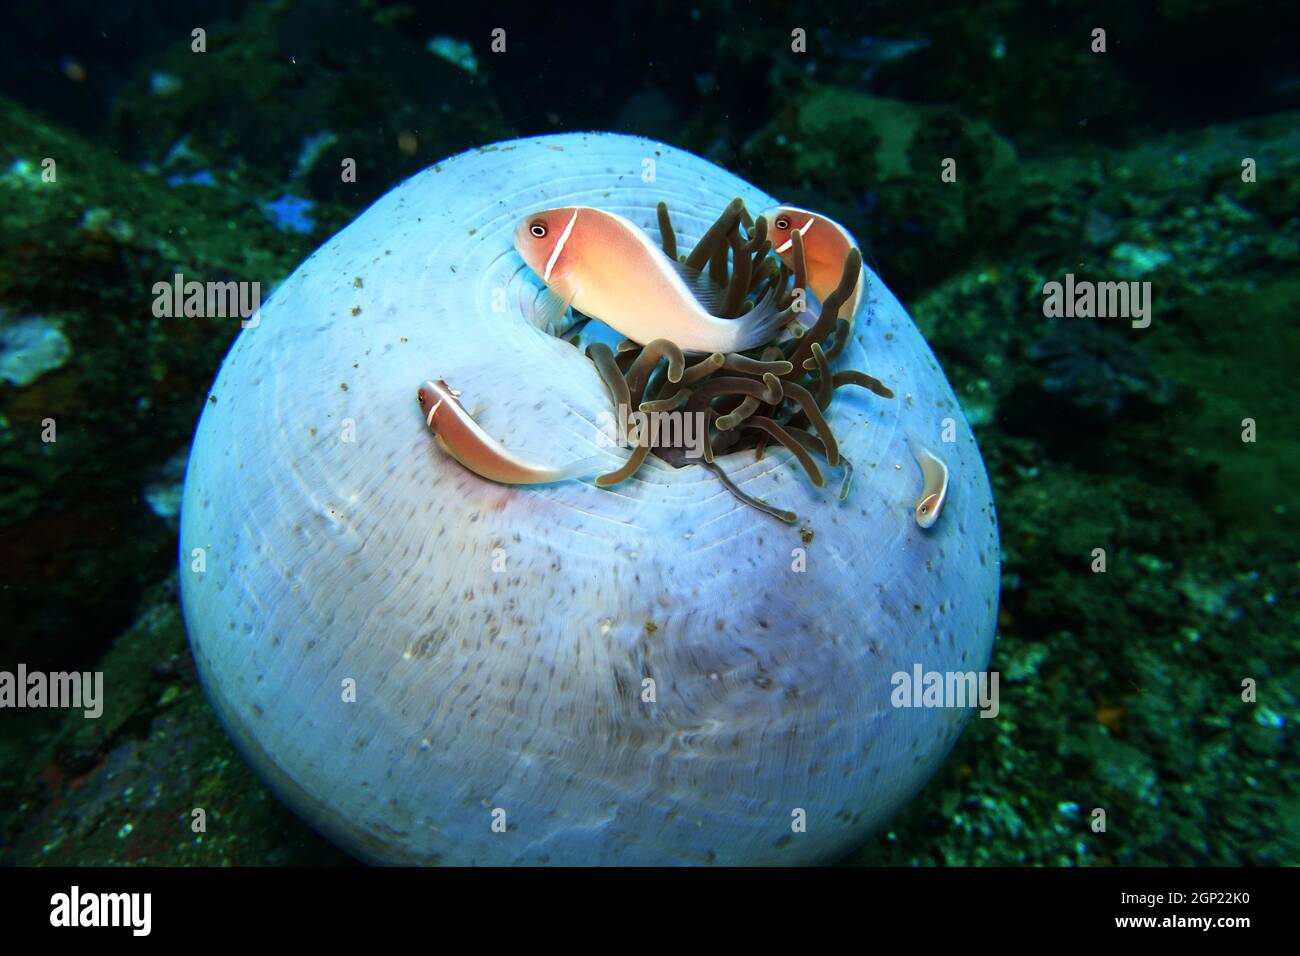 Halsband-Anemonenfisch oder Rosa Weißrückenanemonenfisch (Amphiprion perideraion) auf einer fast geschlossenen Prachtanemone (Heteractis magnifica), L. Foto de stock